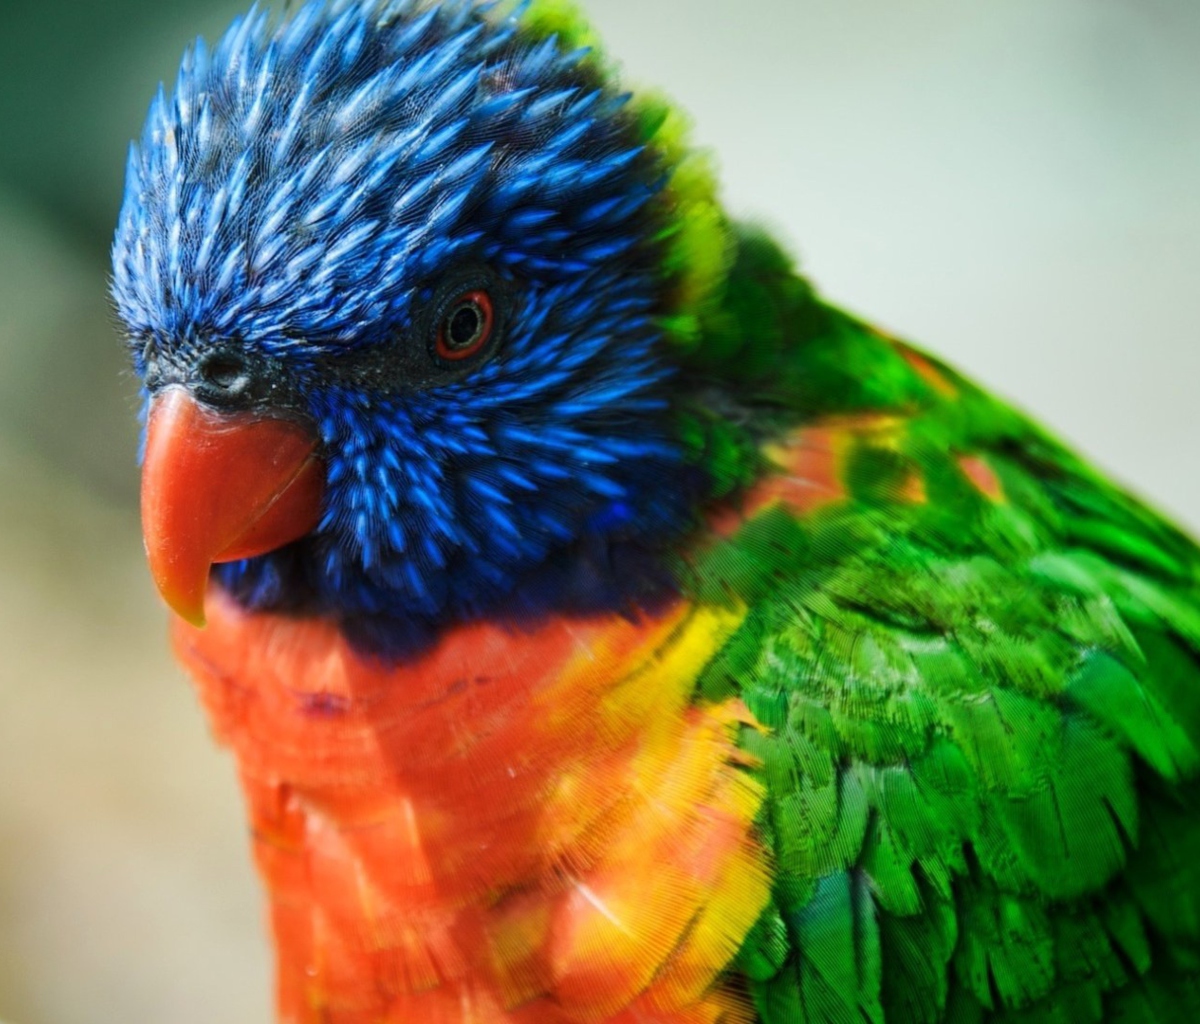 Das Colorful Parrot Wallpaper 1200x1024